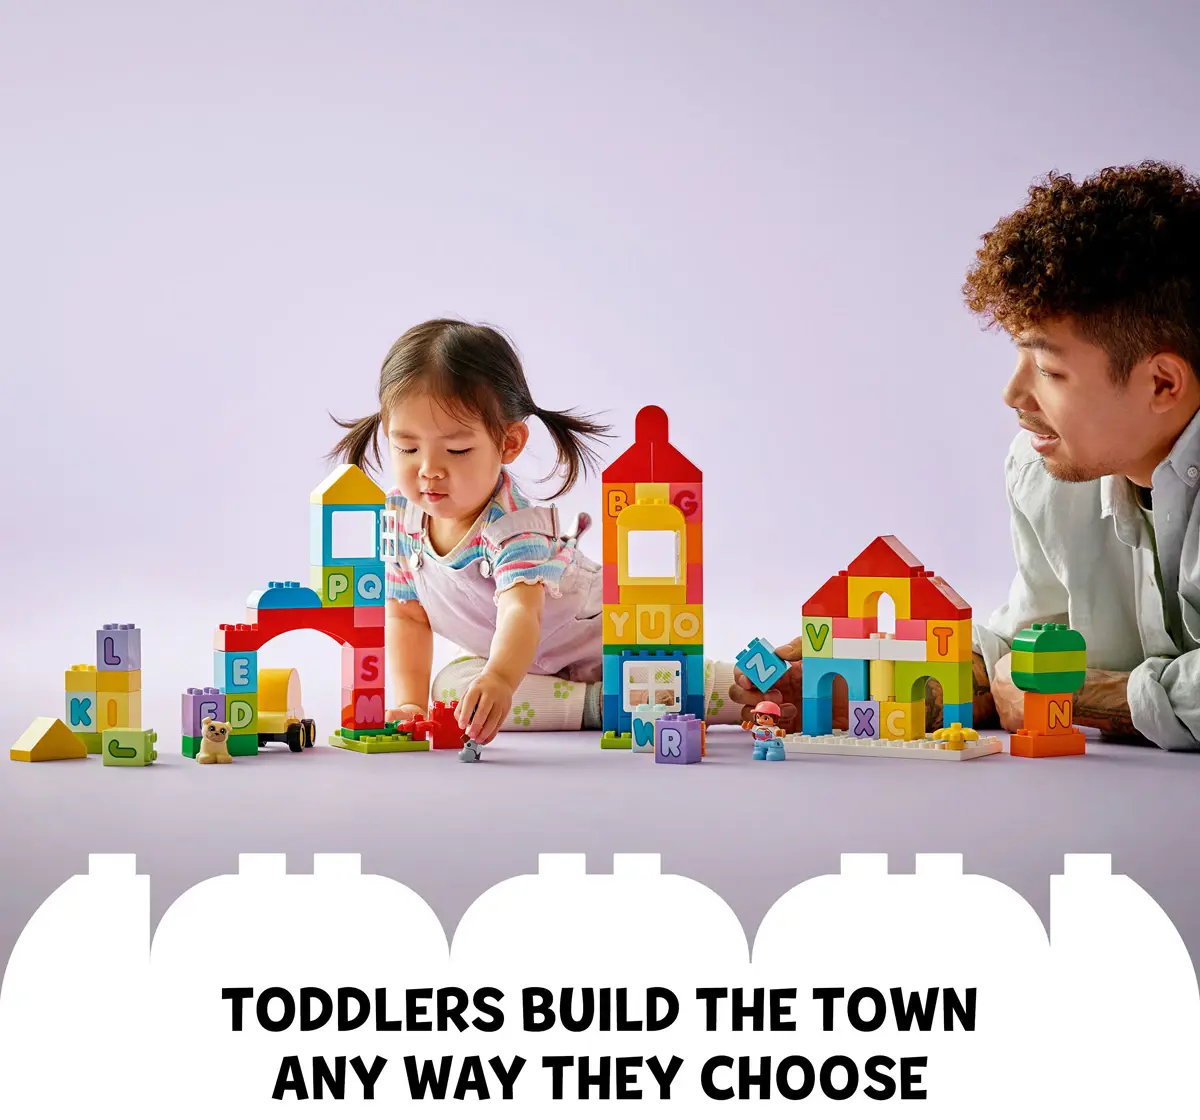 Lego Duplo Classic Alphabet Town 10935 Building Toy Set (87 Pieces)